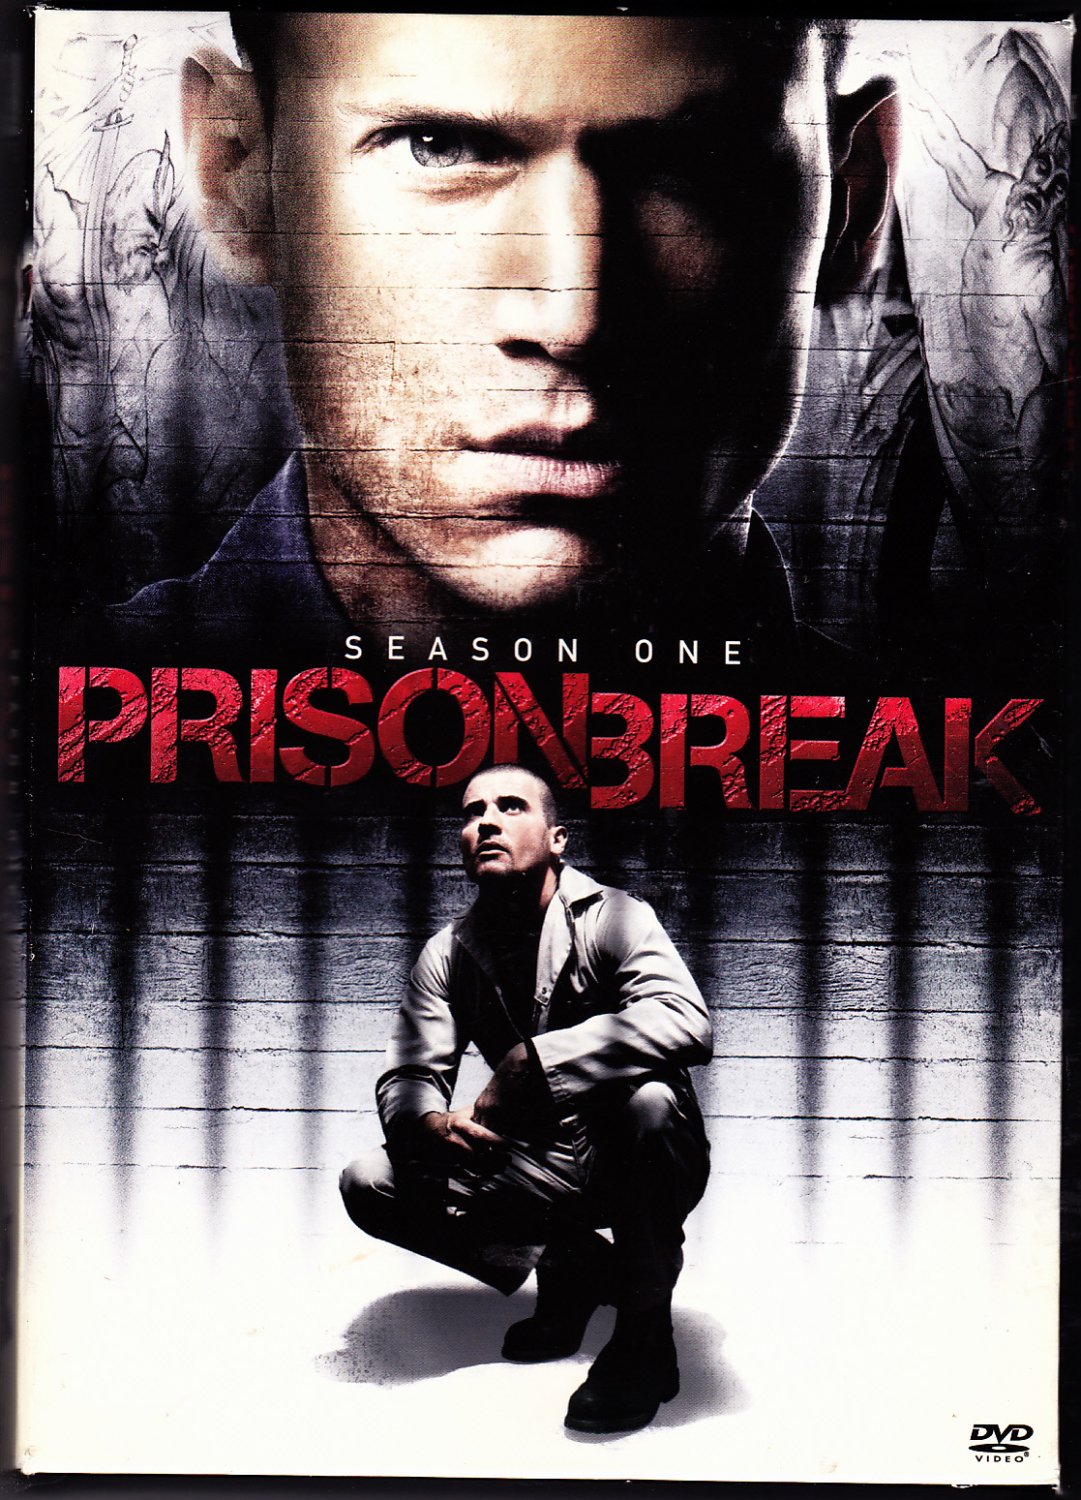 prison break season 1 on dvd